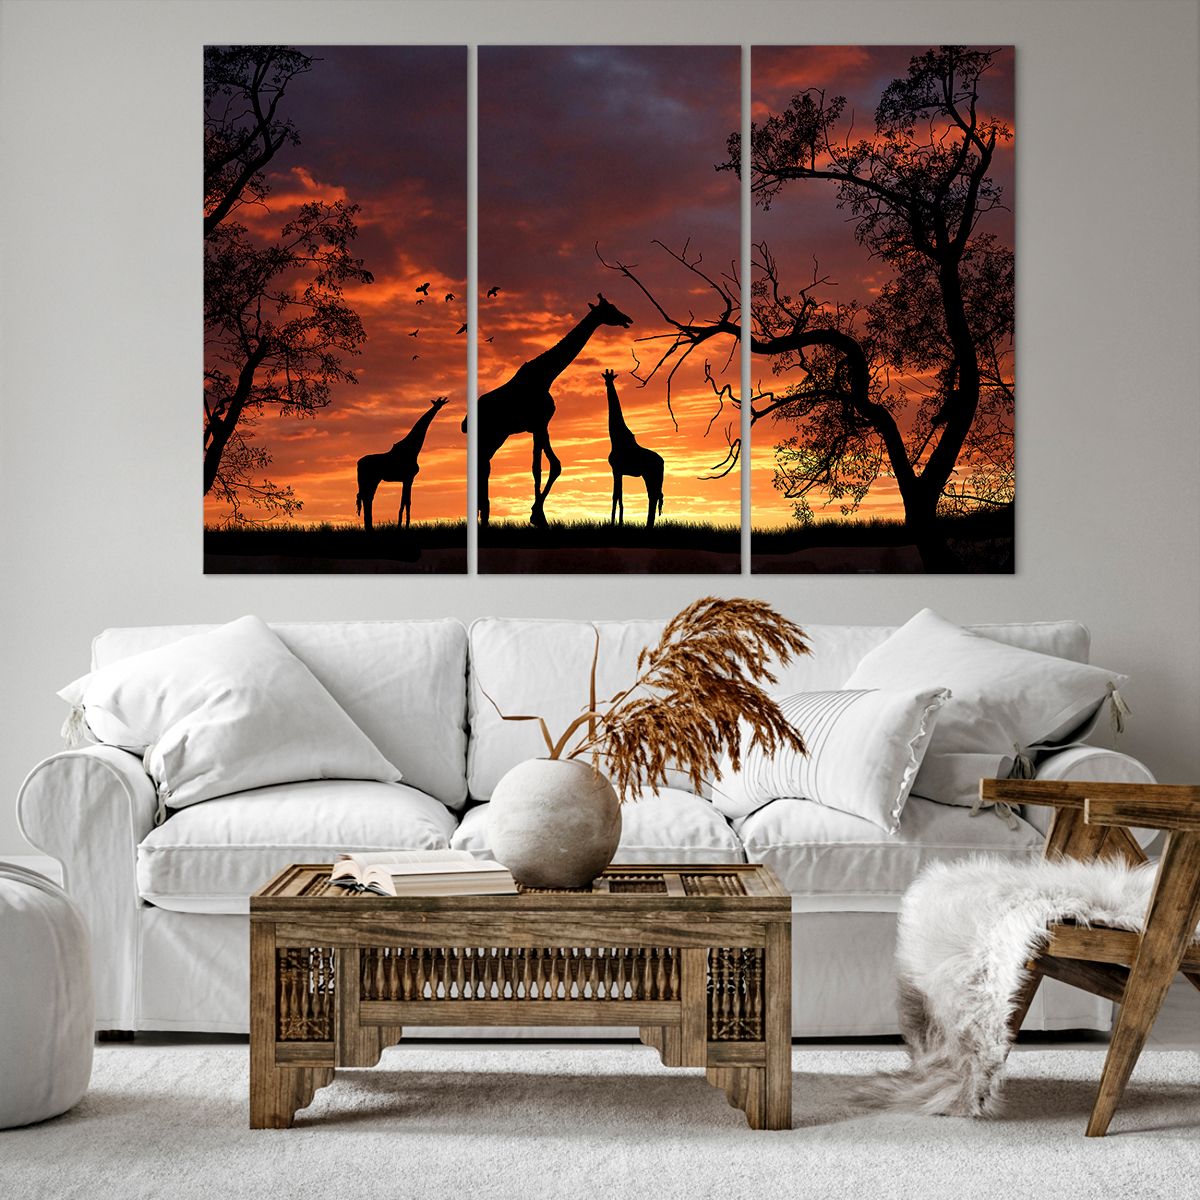 Impression sur toile Animaux, Impression sur toile Girafe, Impression sur toile Afrique, Impression sur toile La Nature, Impression sur toile Le Coucher Du Soleil